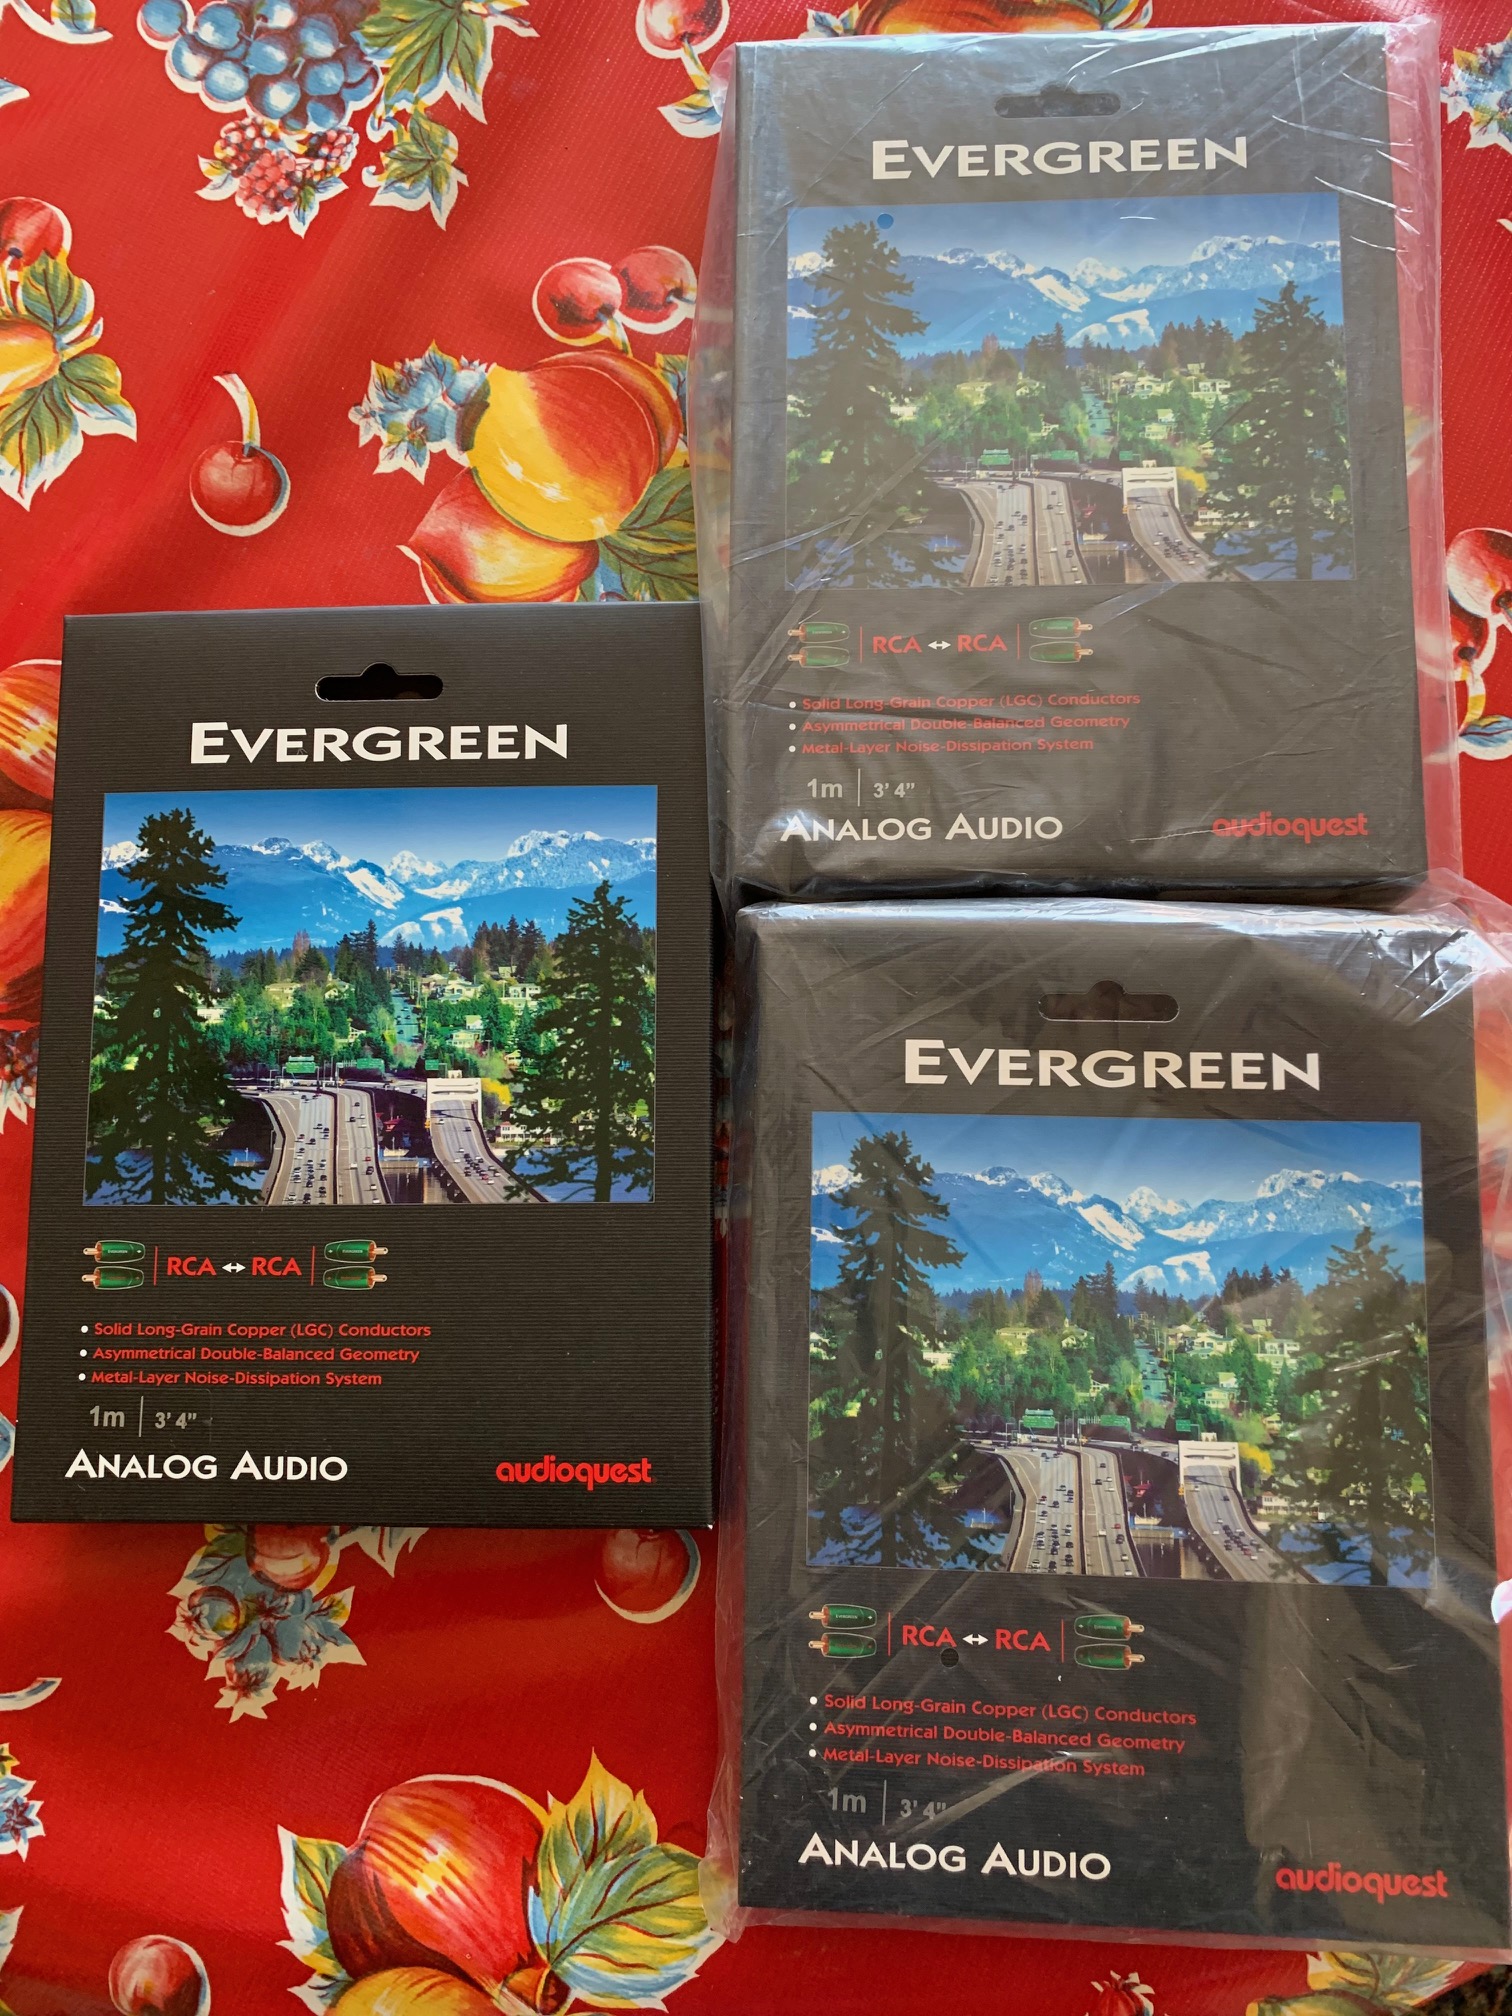 Evergreen.jpg